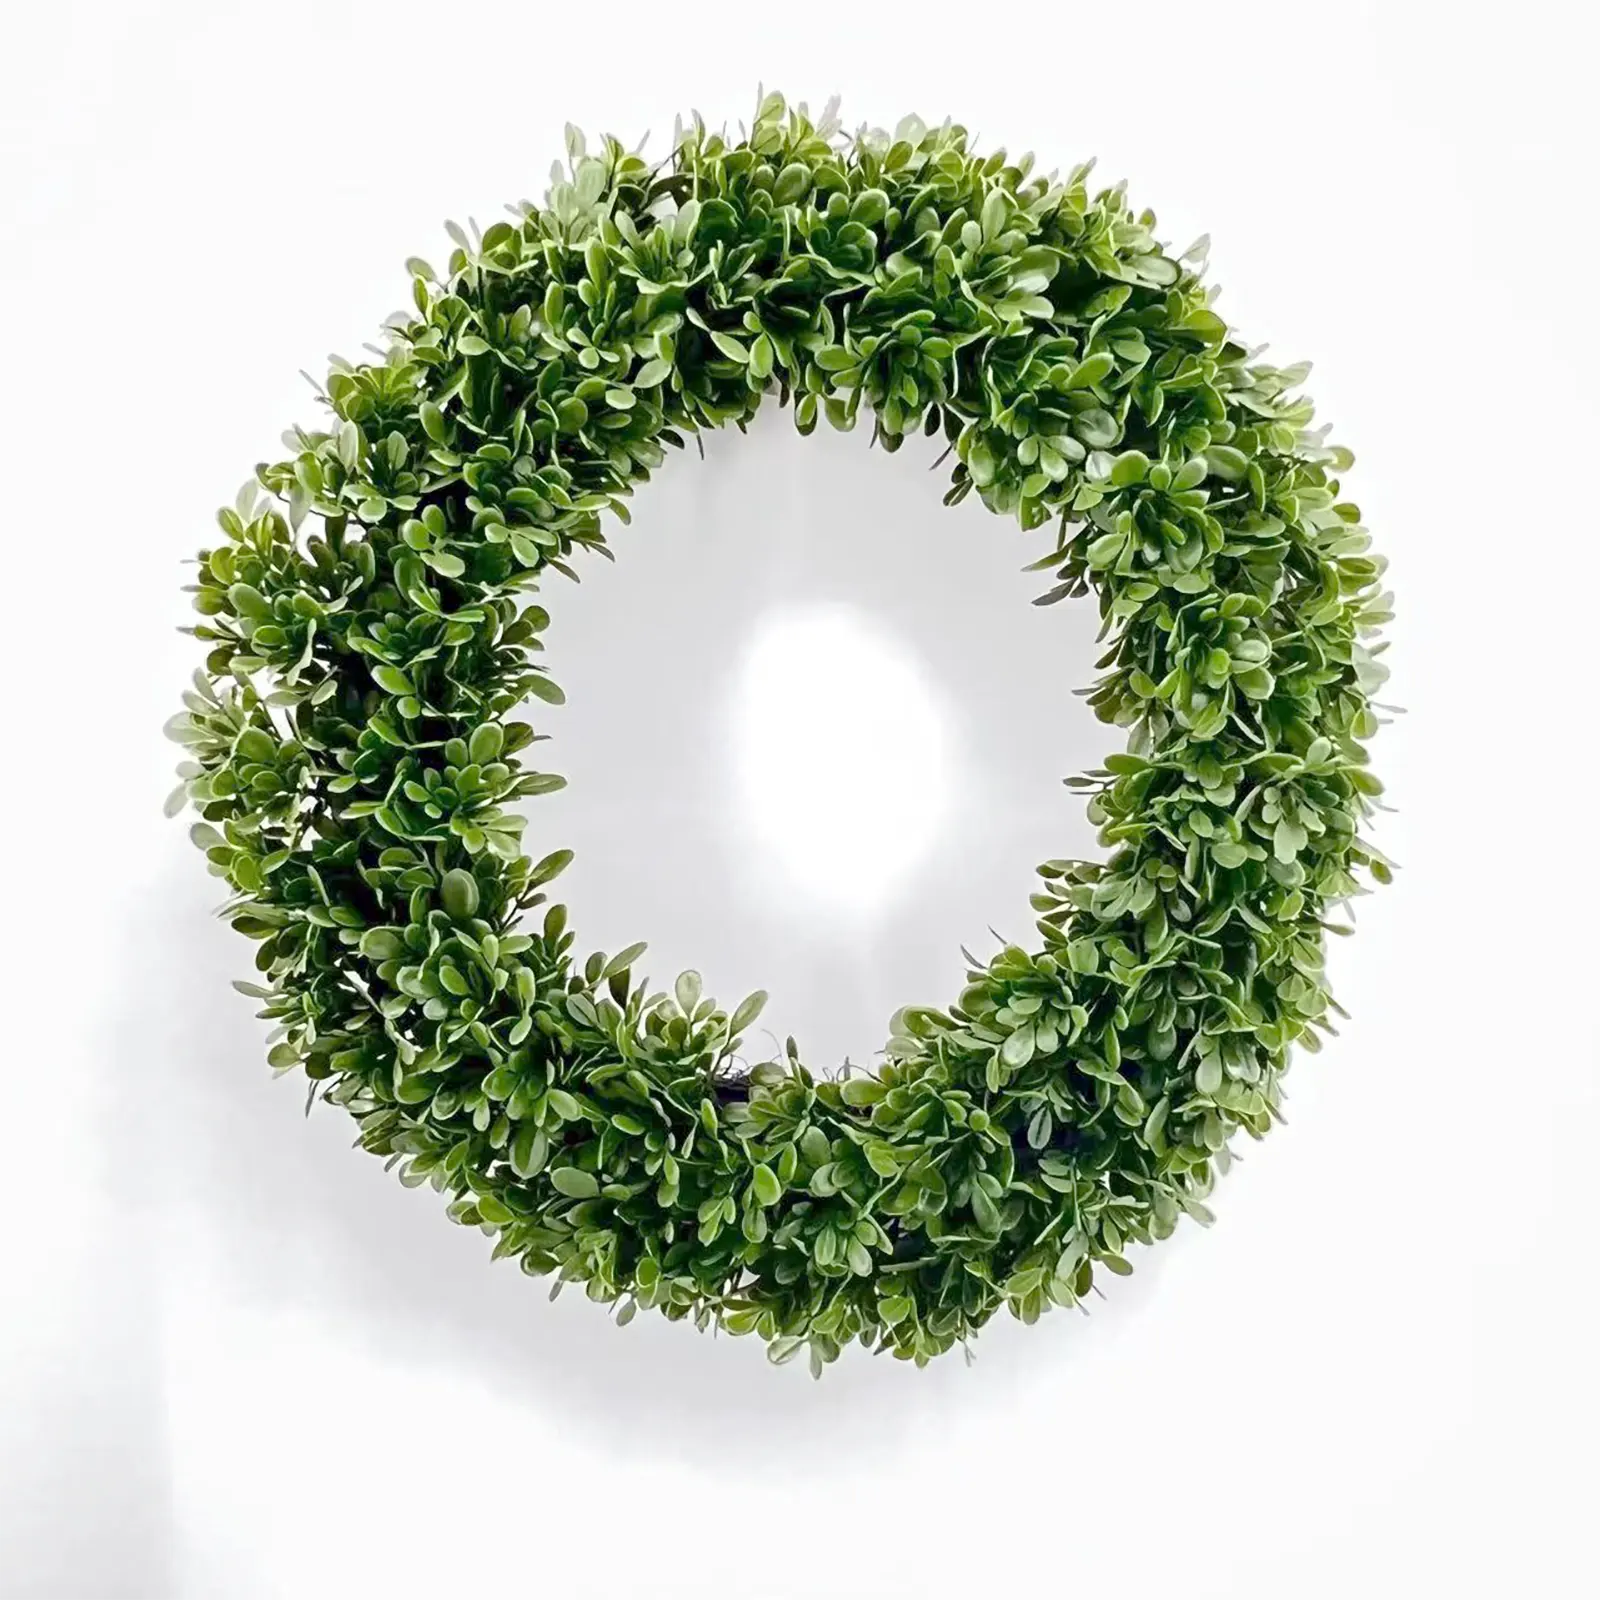 Yüksek kaliteli WreathDream 51cm yapay yeşil çelenk ön kapı bahçe simülasyon yeşillik dekor için